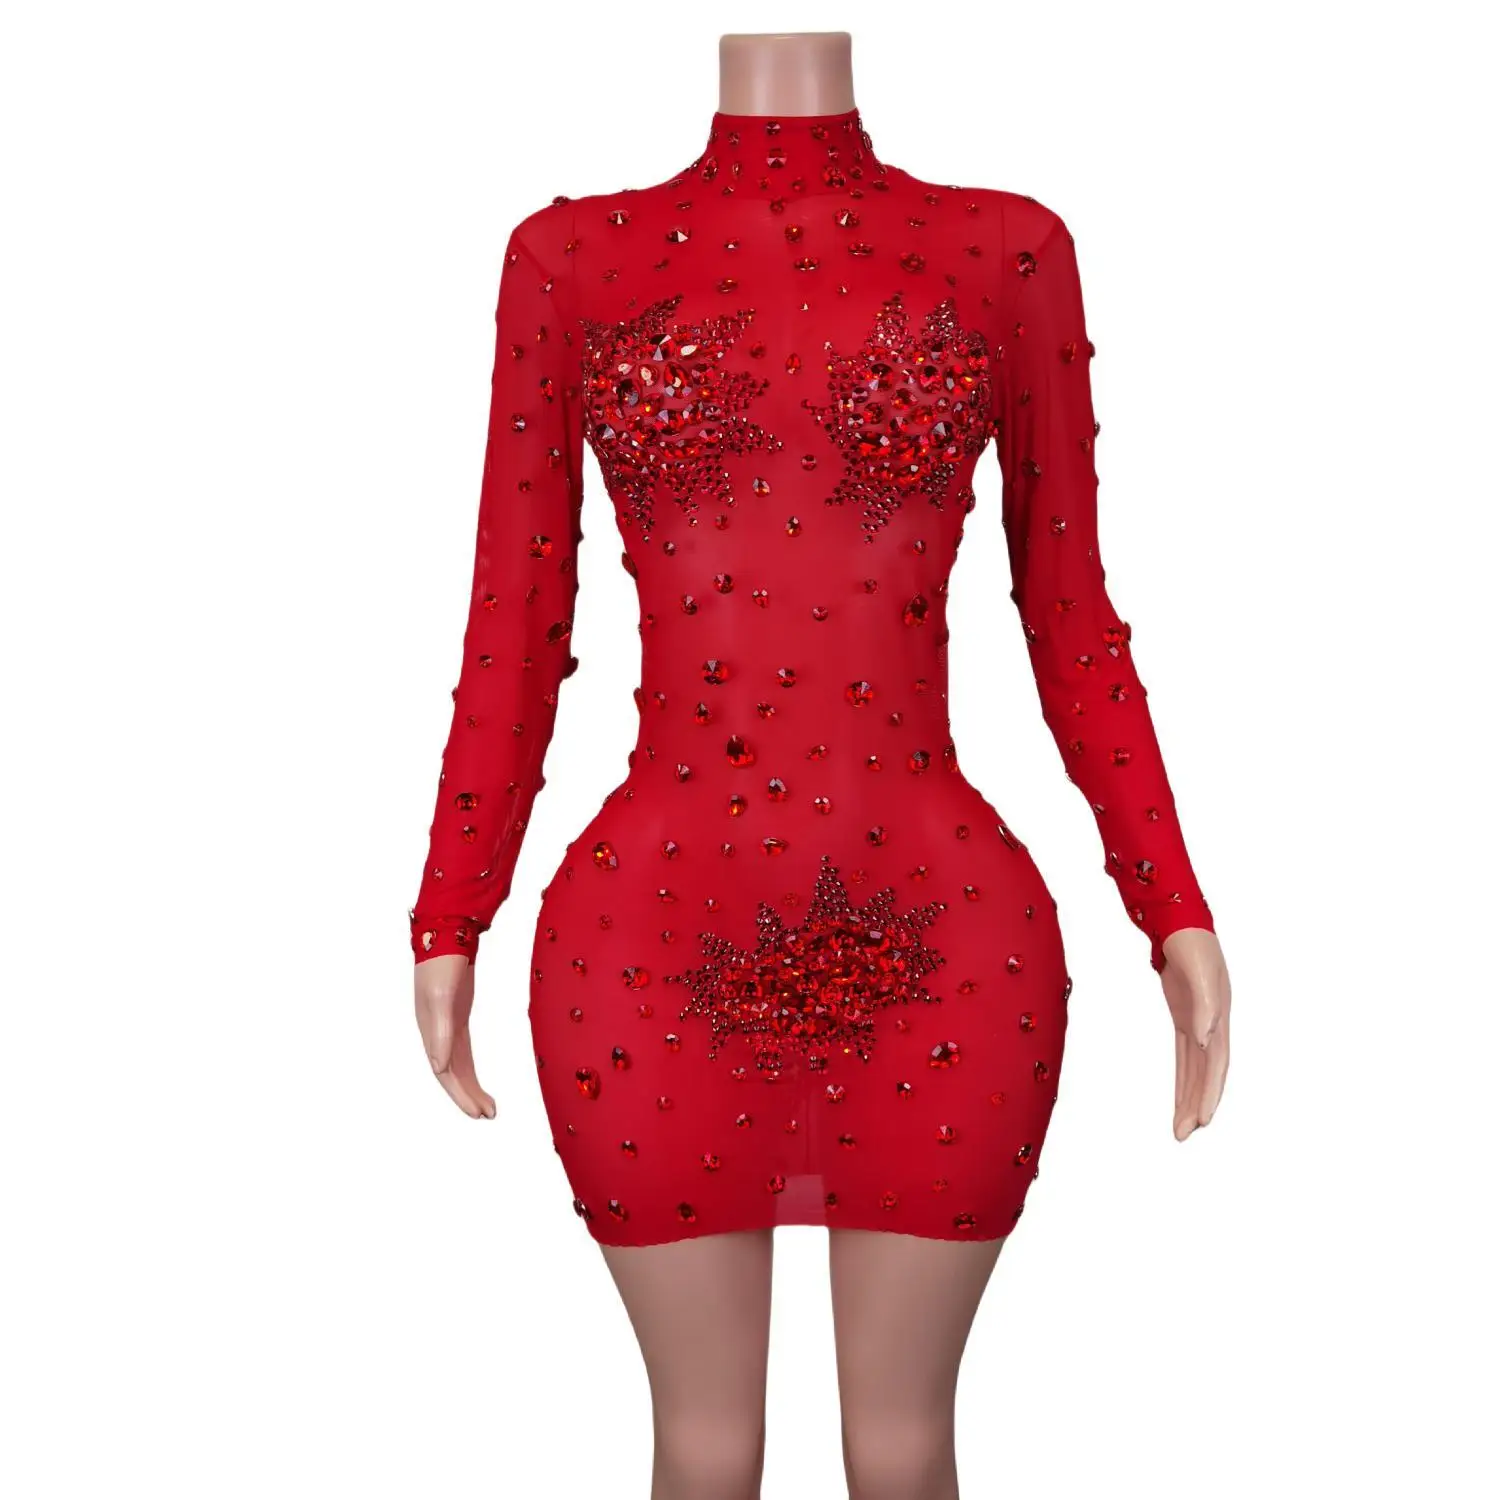 

Женское роскошное красное платье-футляр, сексуальное мини-платье, вечерний женский костюм для выступления, одежда для ночного клуба, певицы, сценическая одежда Guibin